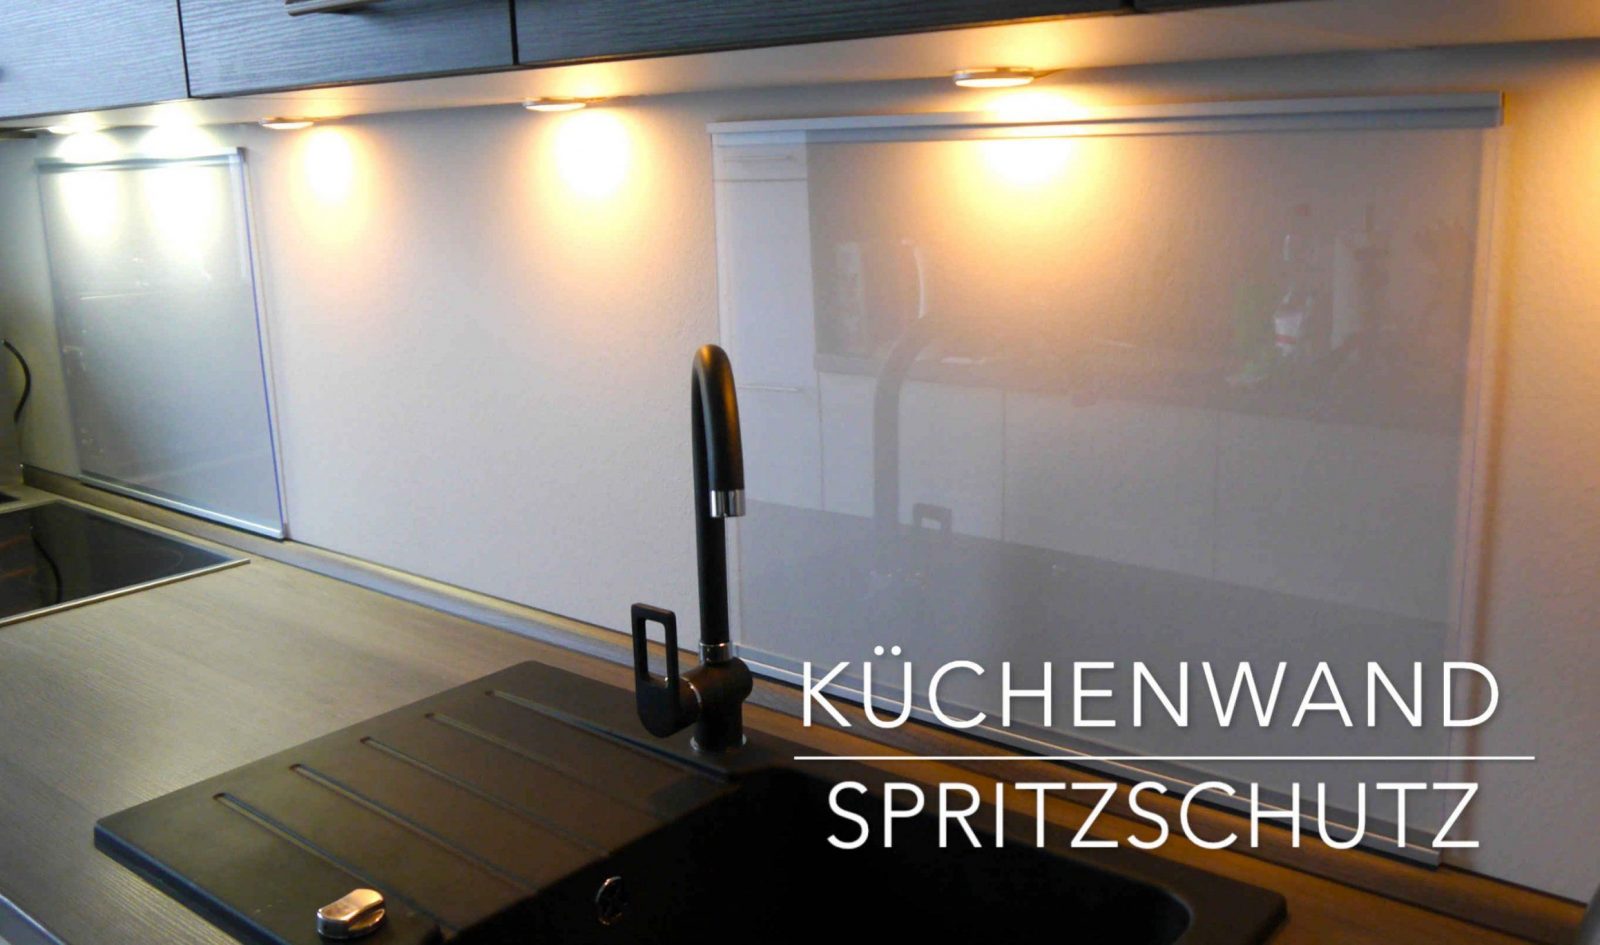 Küchen Wand Spritzschutz Aus Plexiglas  Selber Bauen  Anleitung von Spritzschutz Küche Plexiglas Selber Machen Bild